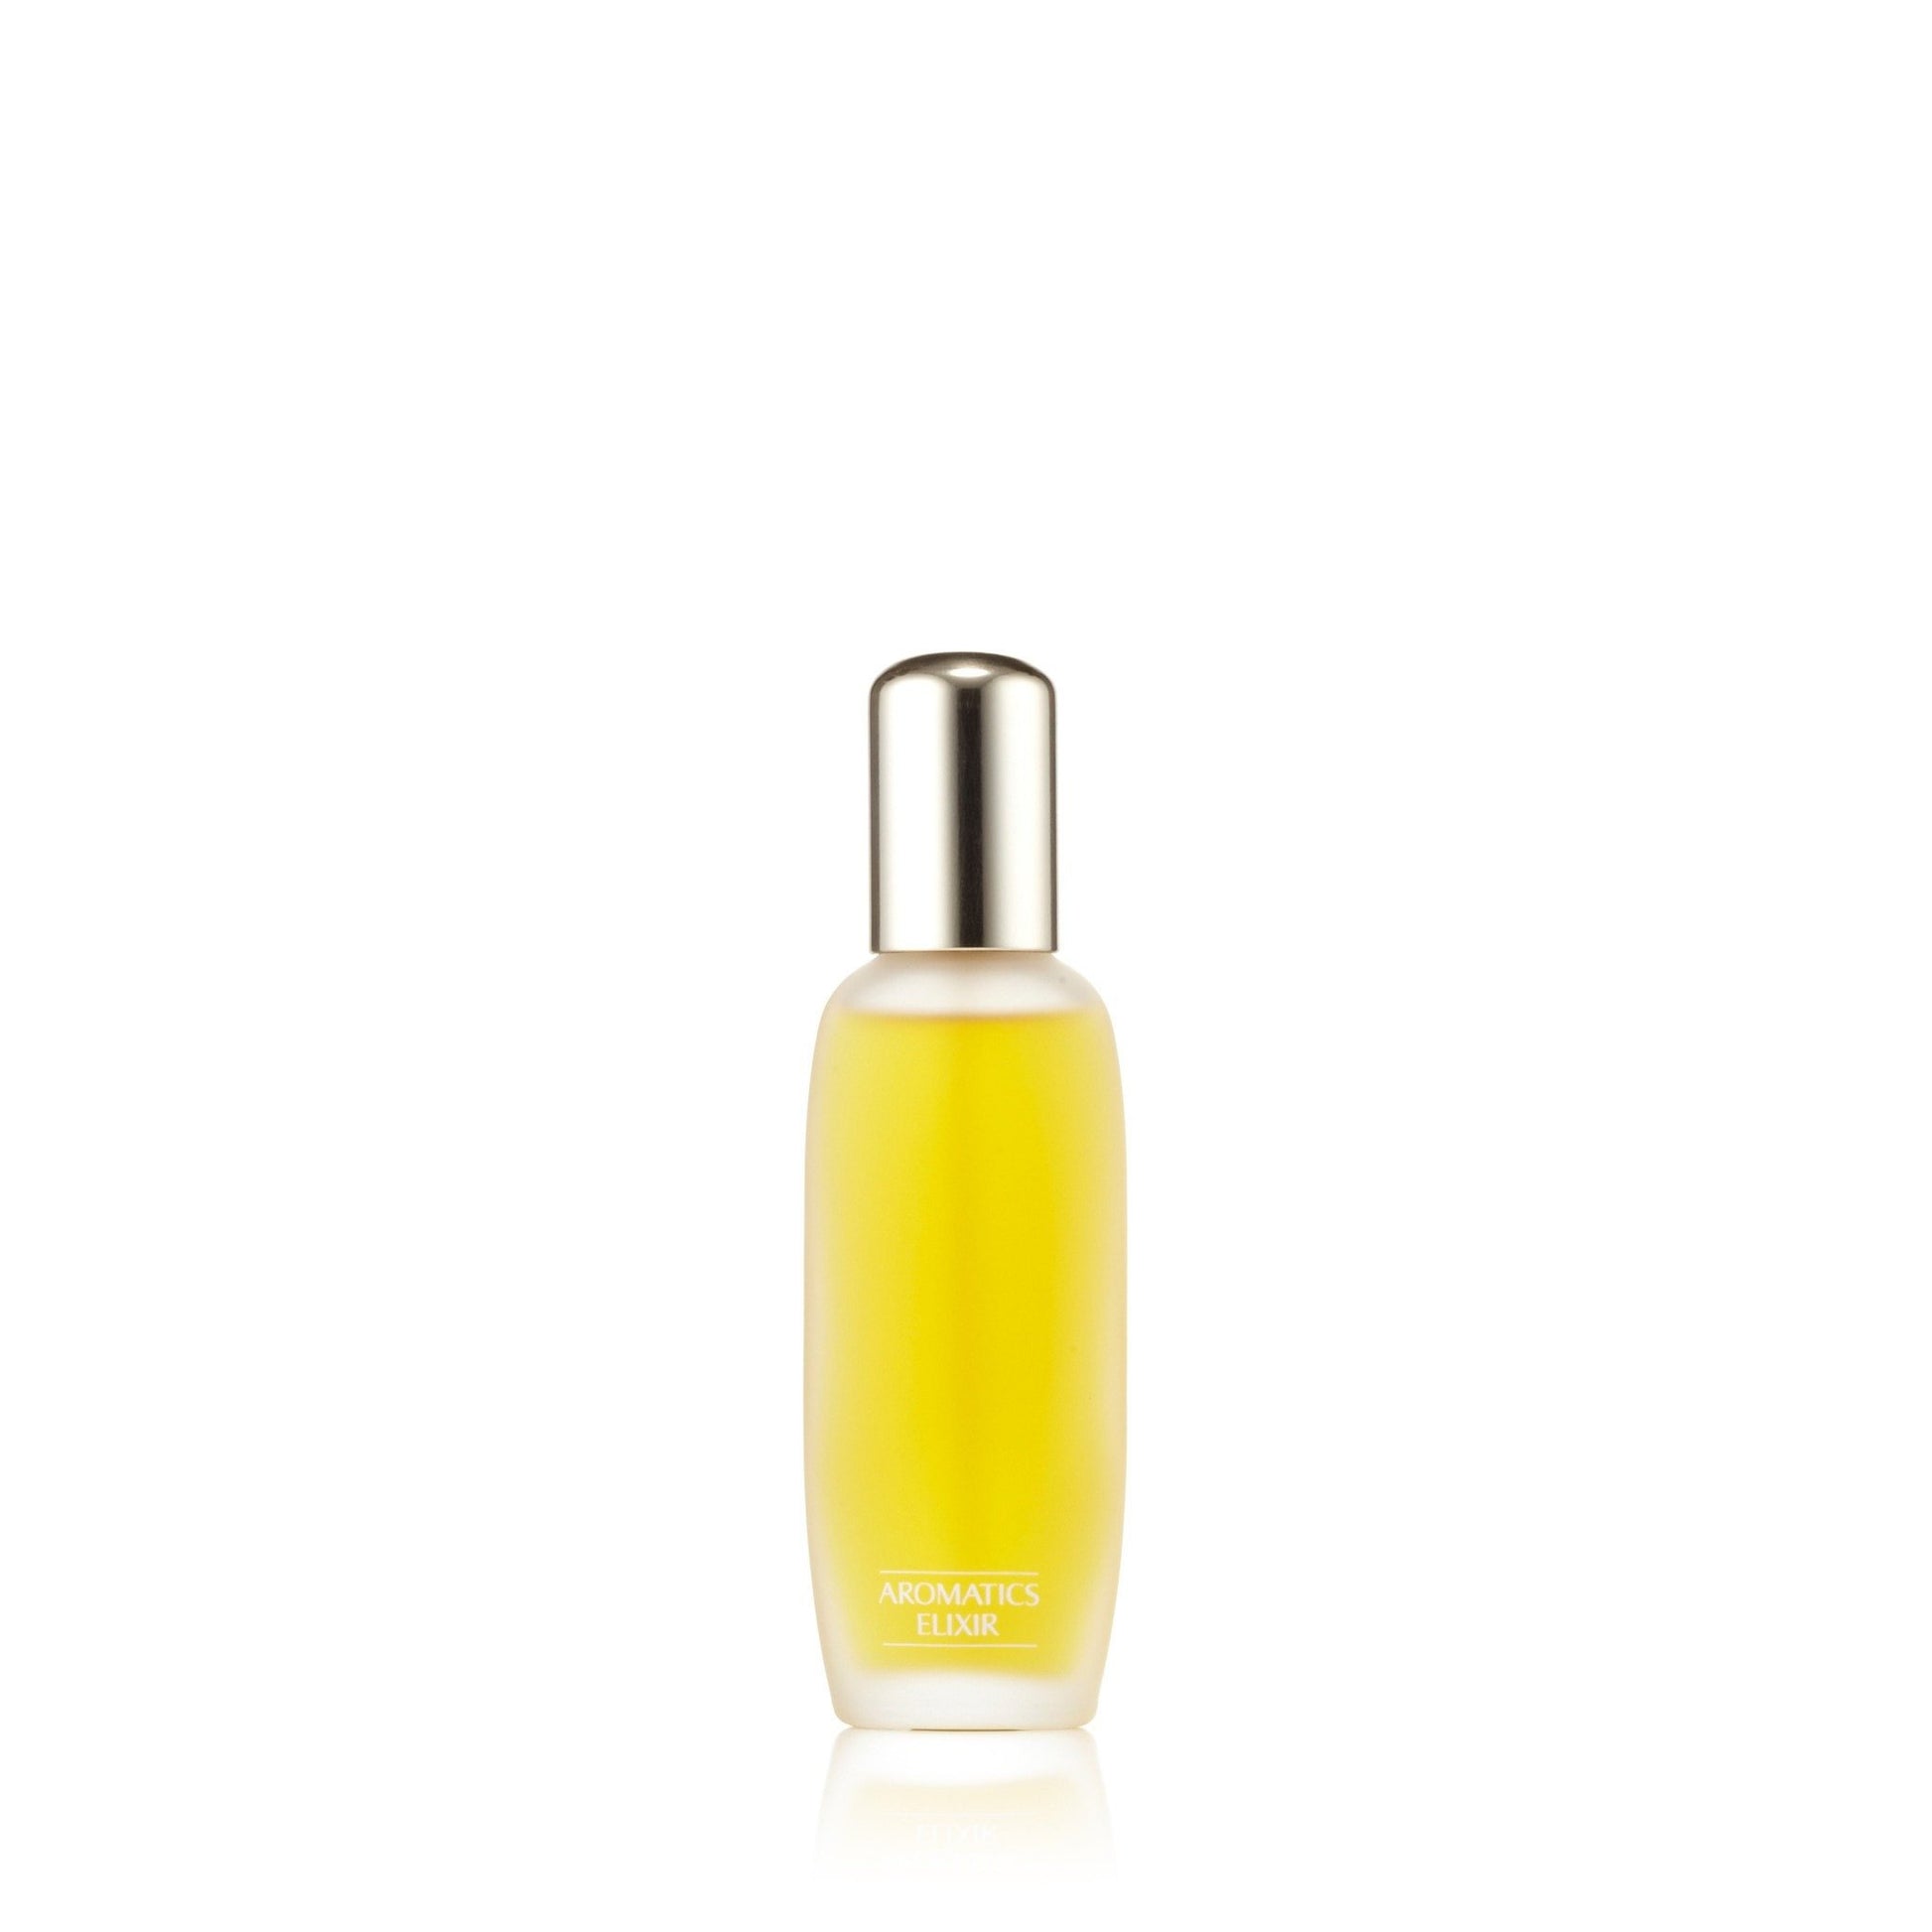 Aromatics Elixir Eau de Parfum Spray for Women by Clinique, Product image 3